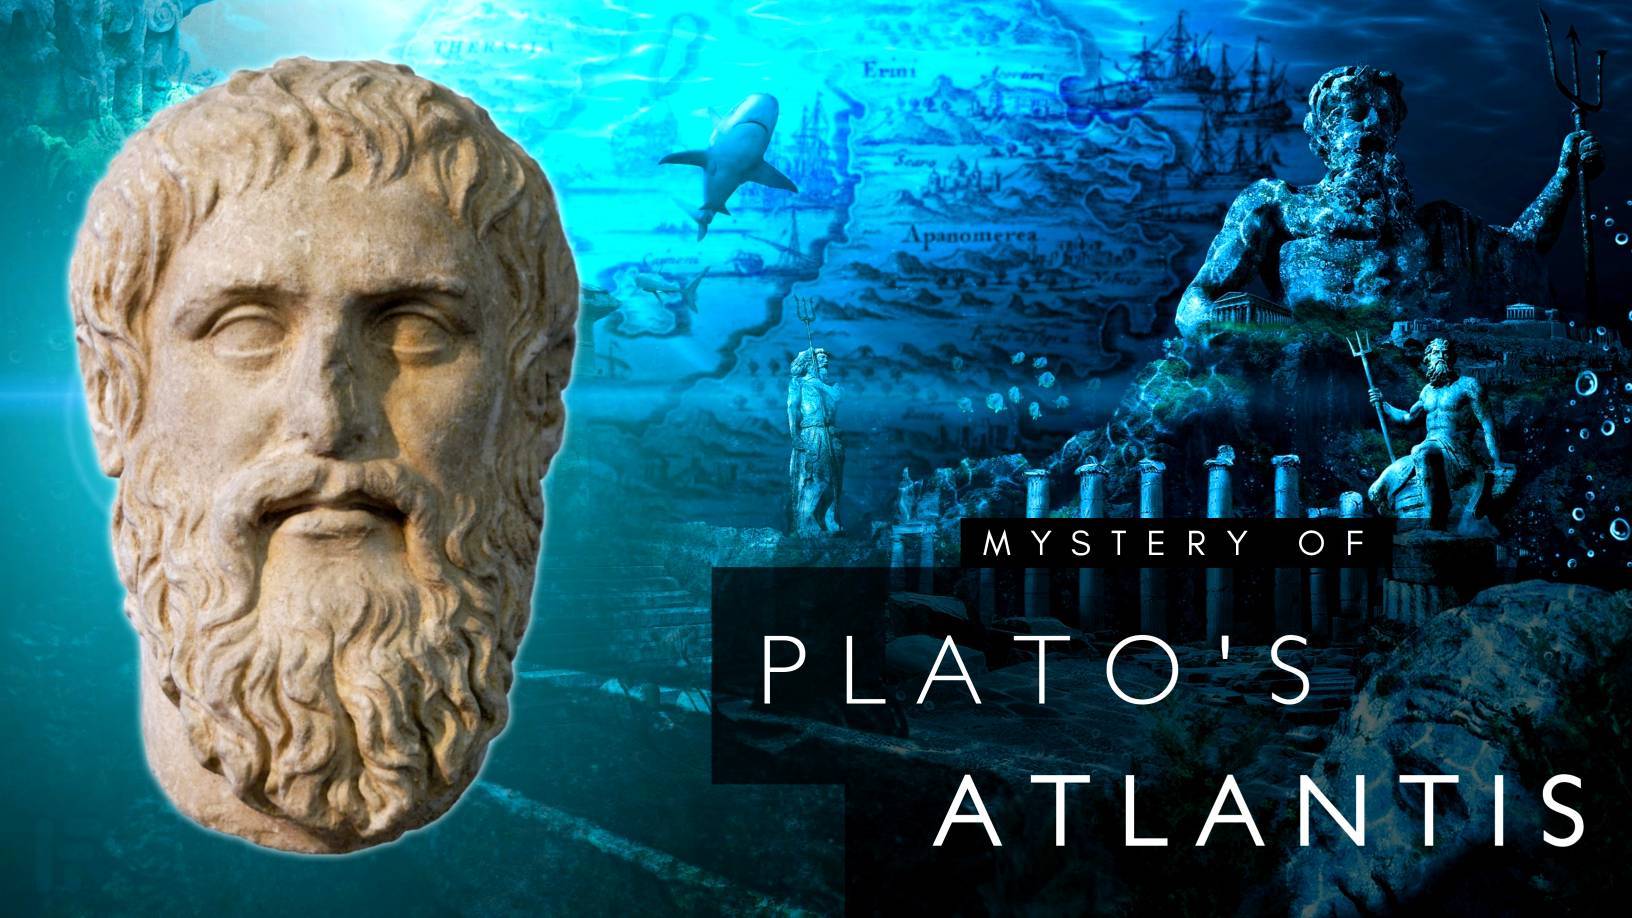 Atlantis ya Plato